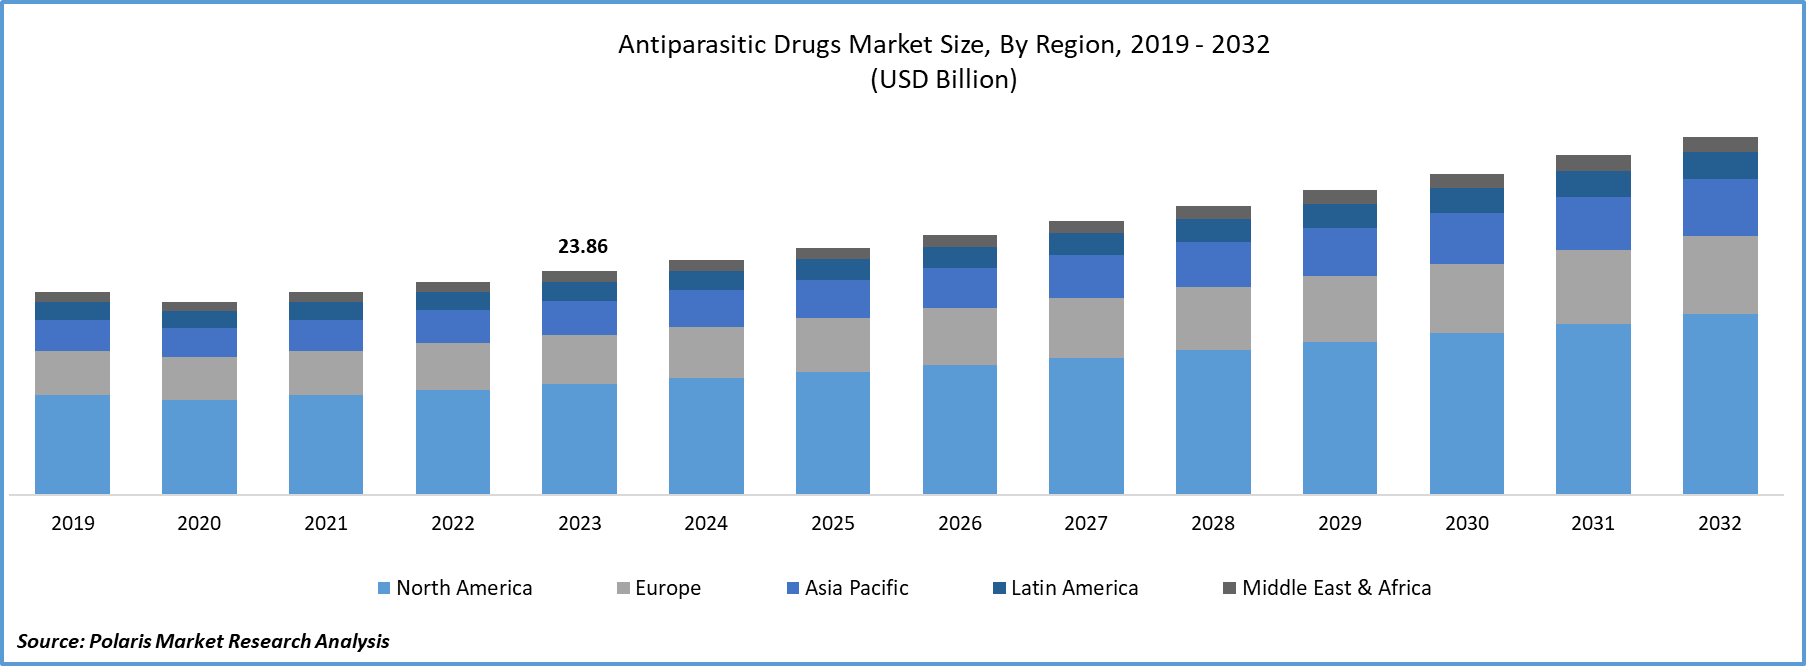 Antiparasitic Drugs Market Size